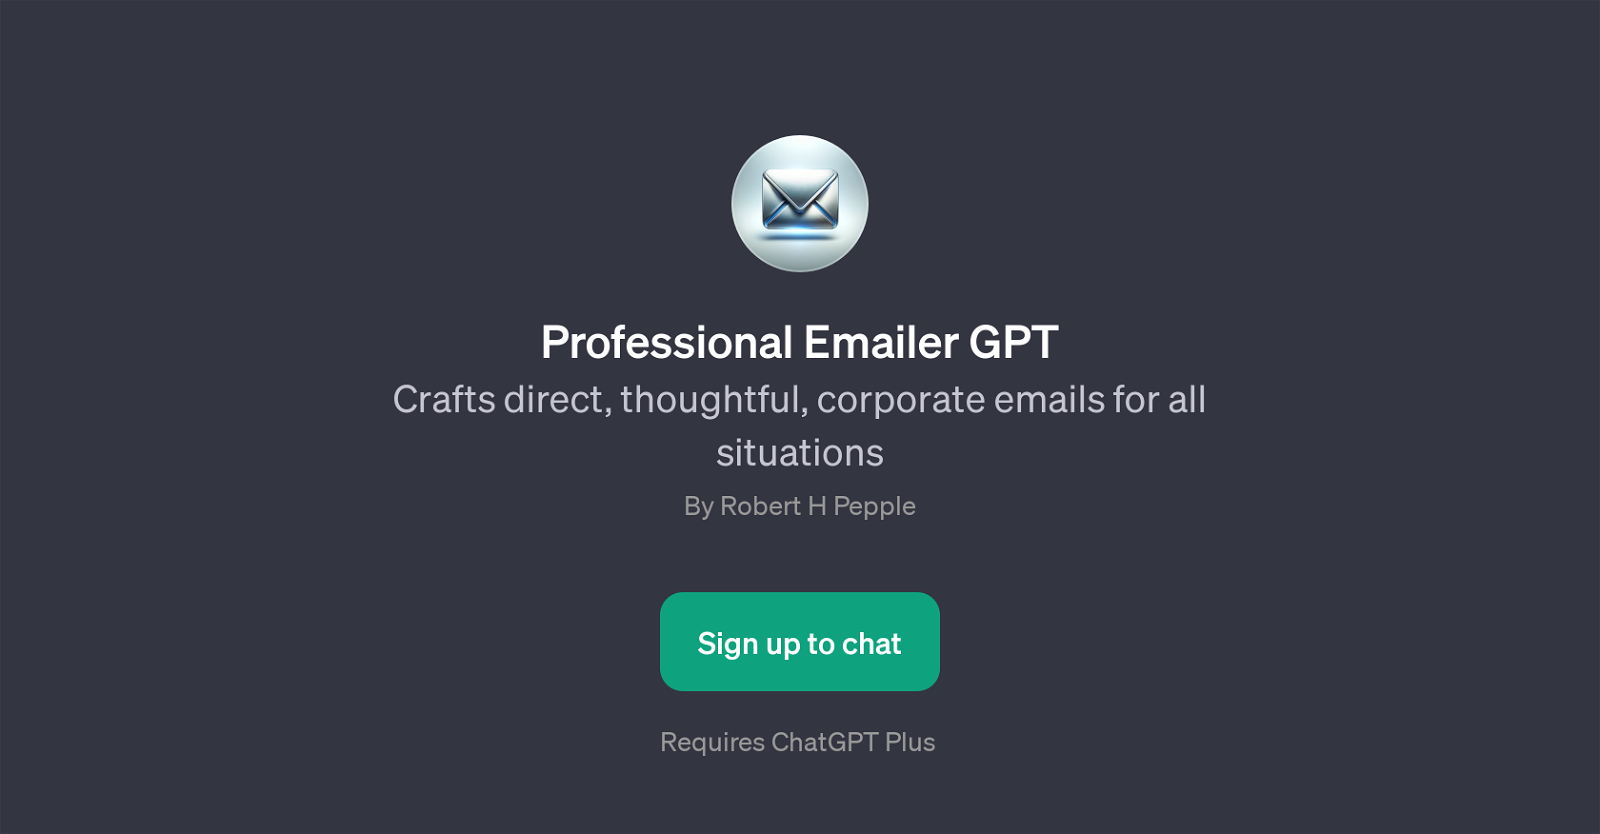 Professional Emailer GPT website